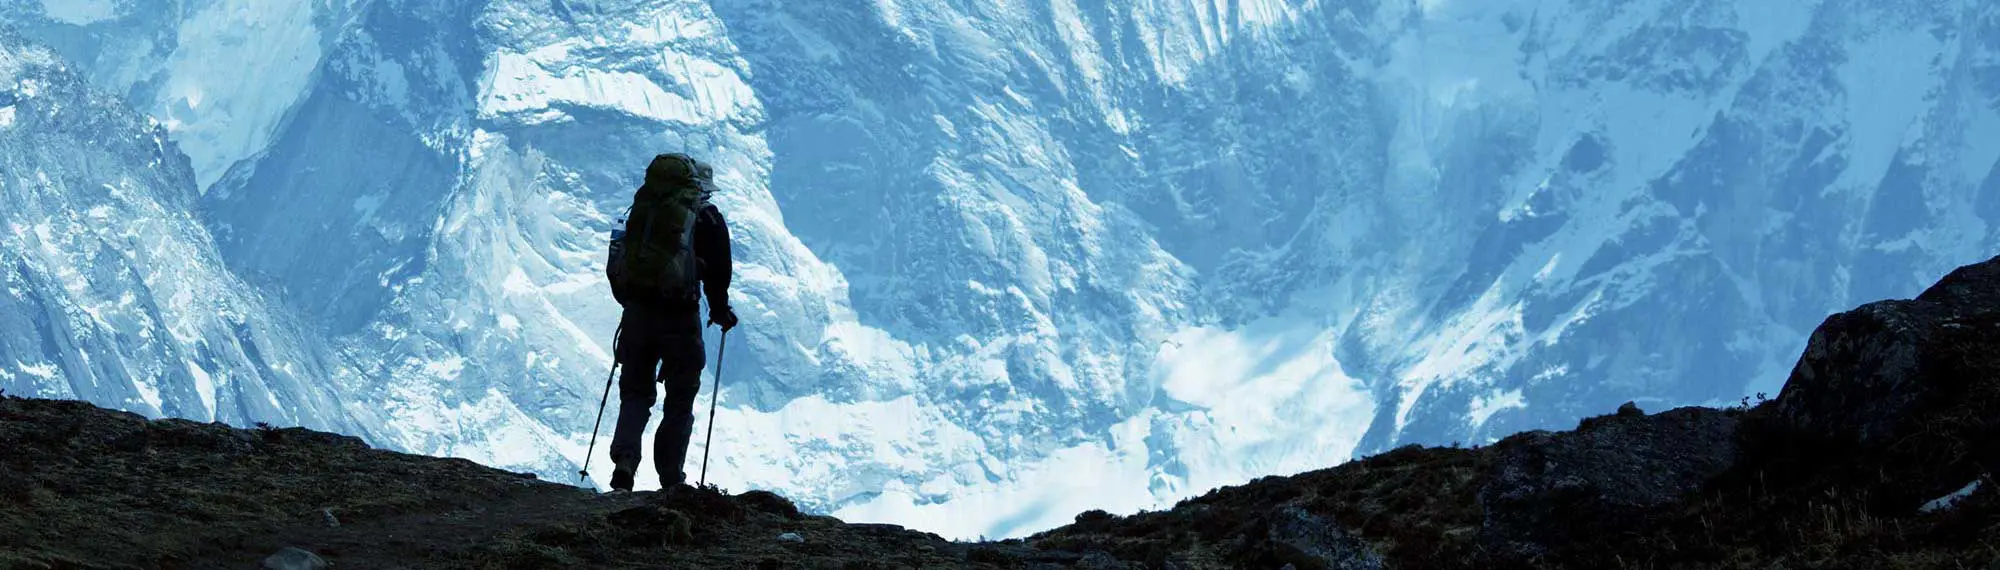 Panorama von einem Bergsteiger vor einer schneebedeckten Felslandschaft